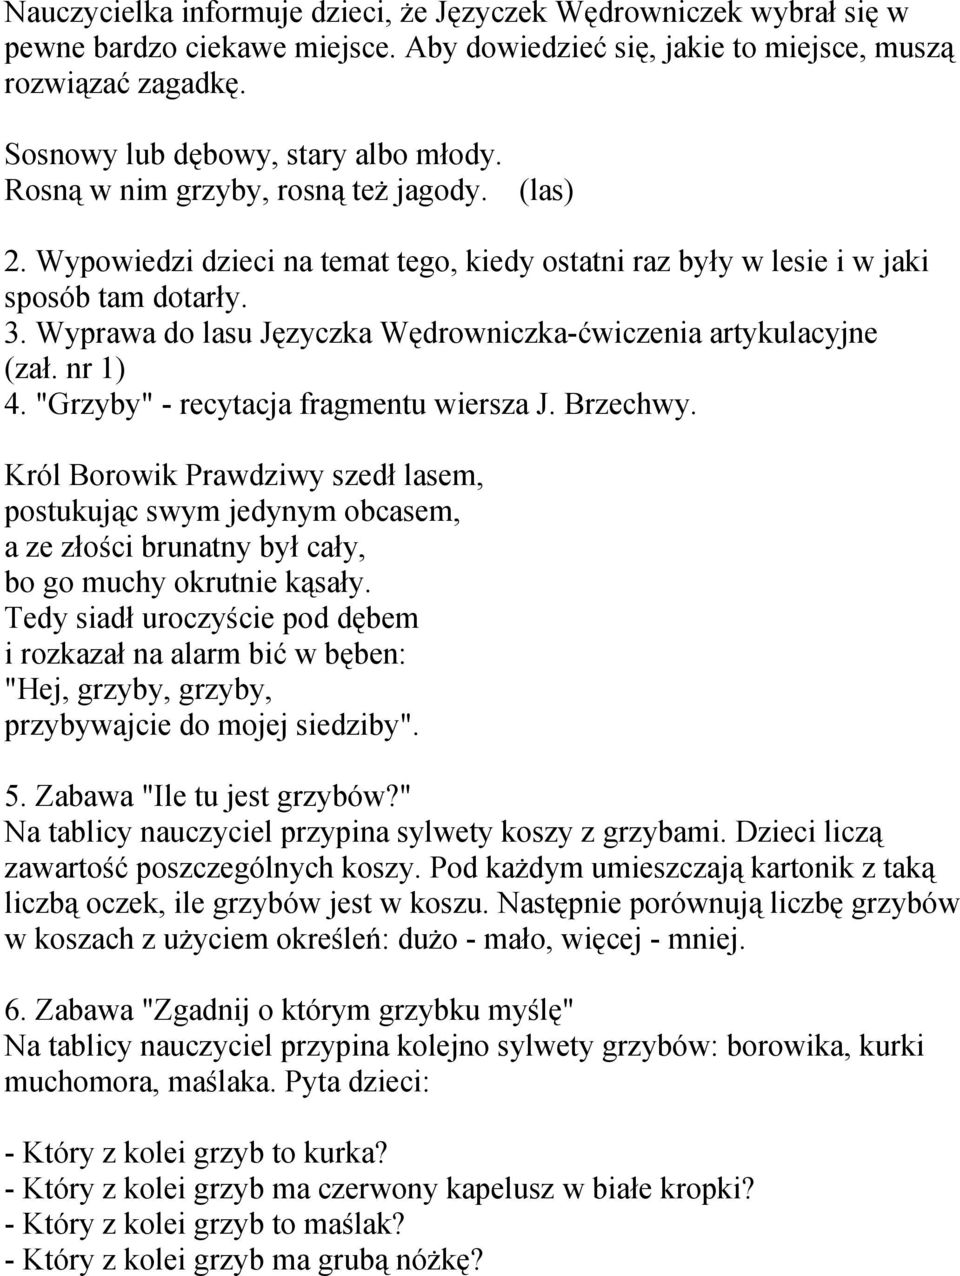 Wyprawa do lasu Języczka Wędrowniczka-ćwiczenia artykulacyjne (zał. nr 1) 4. "Grzyby" - recytacja fragmentu wiersza J. Brzechwy.